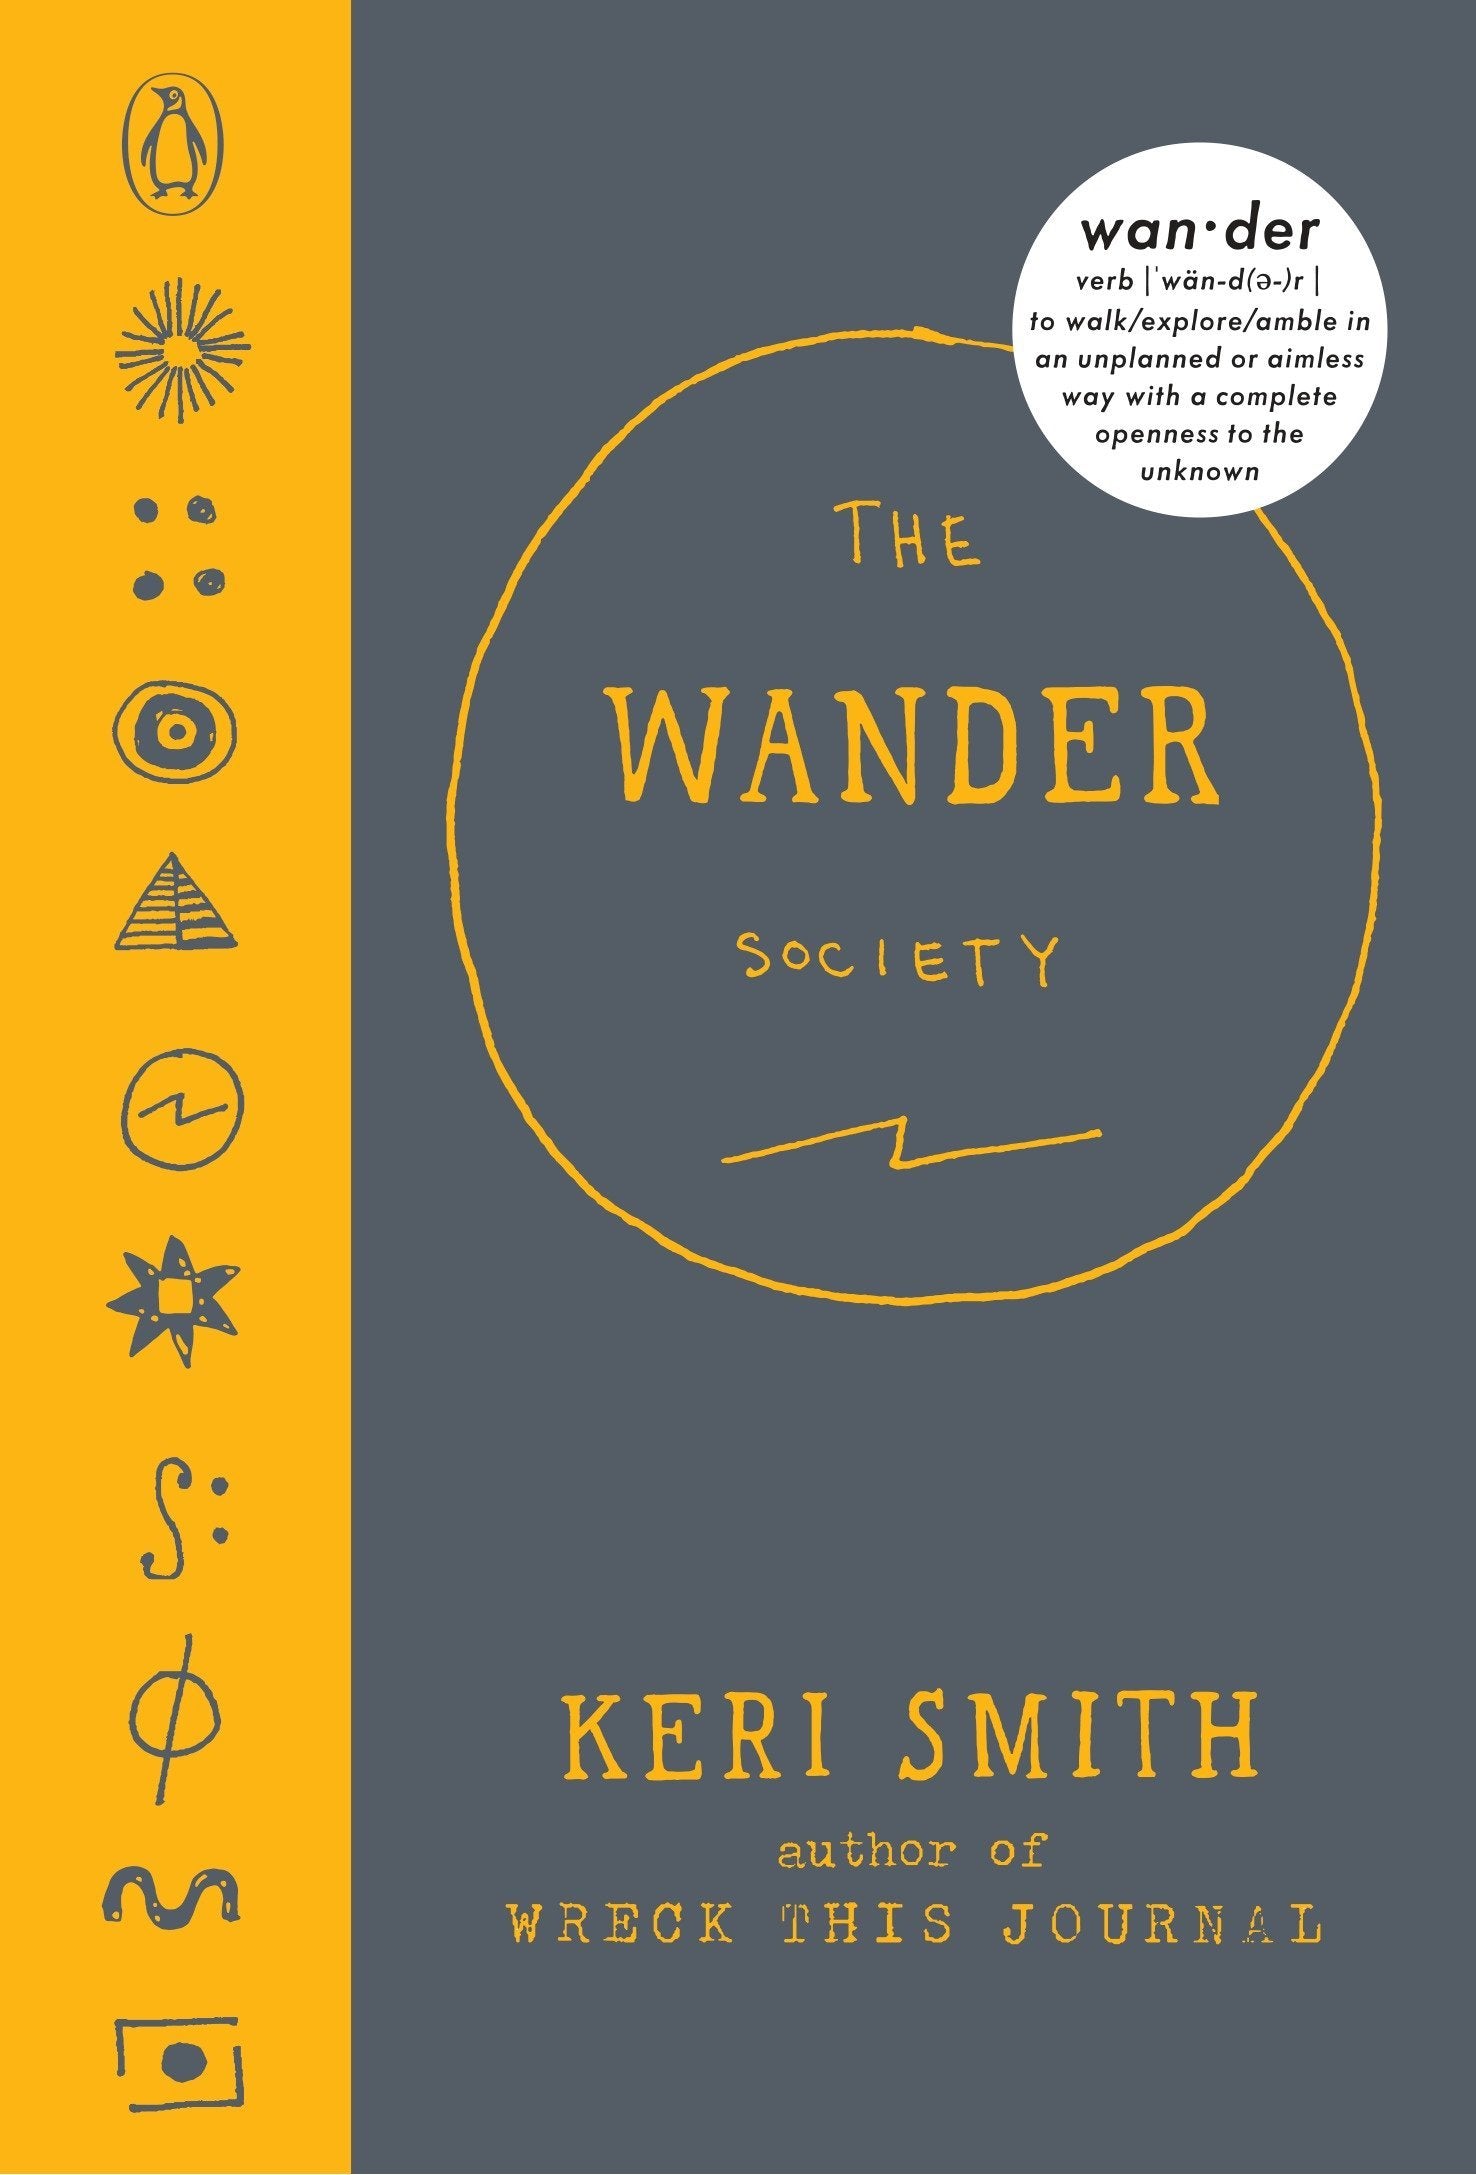 The Wander Society book by Keri Smith